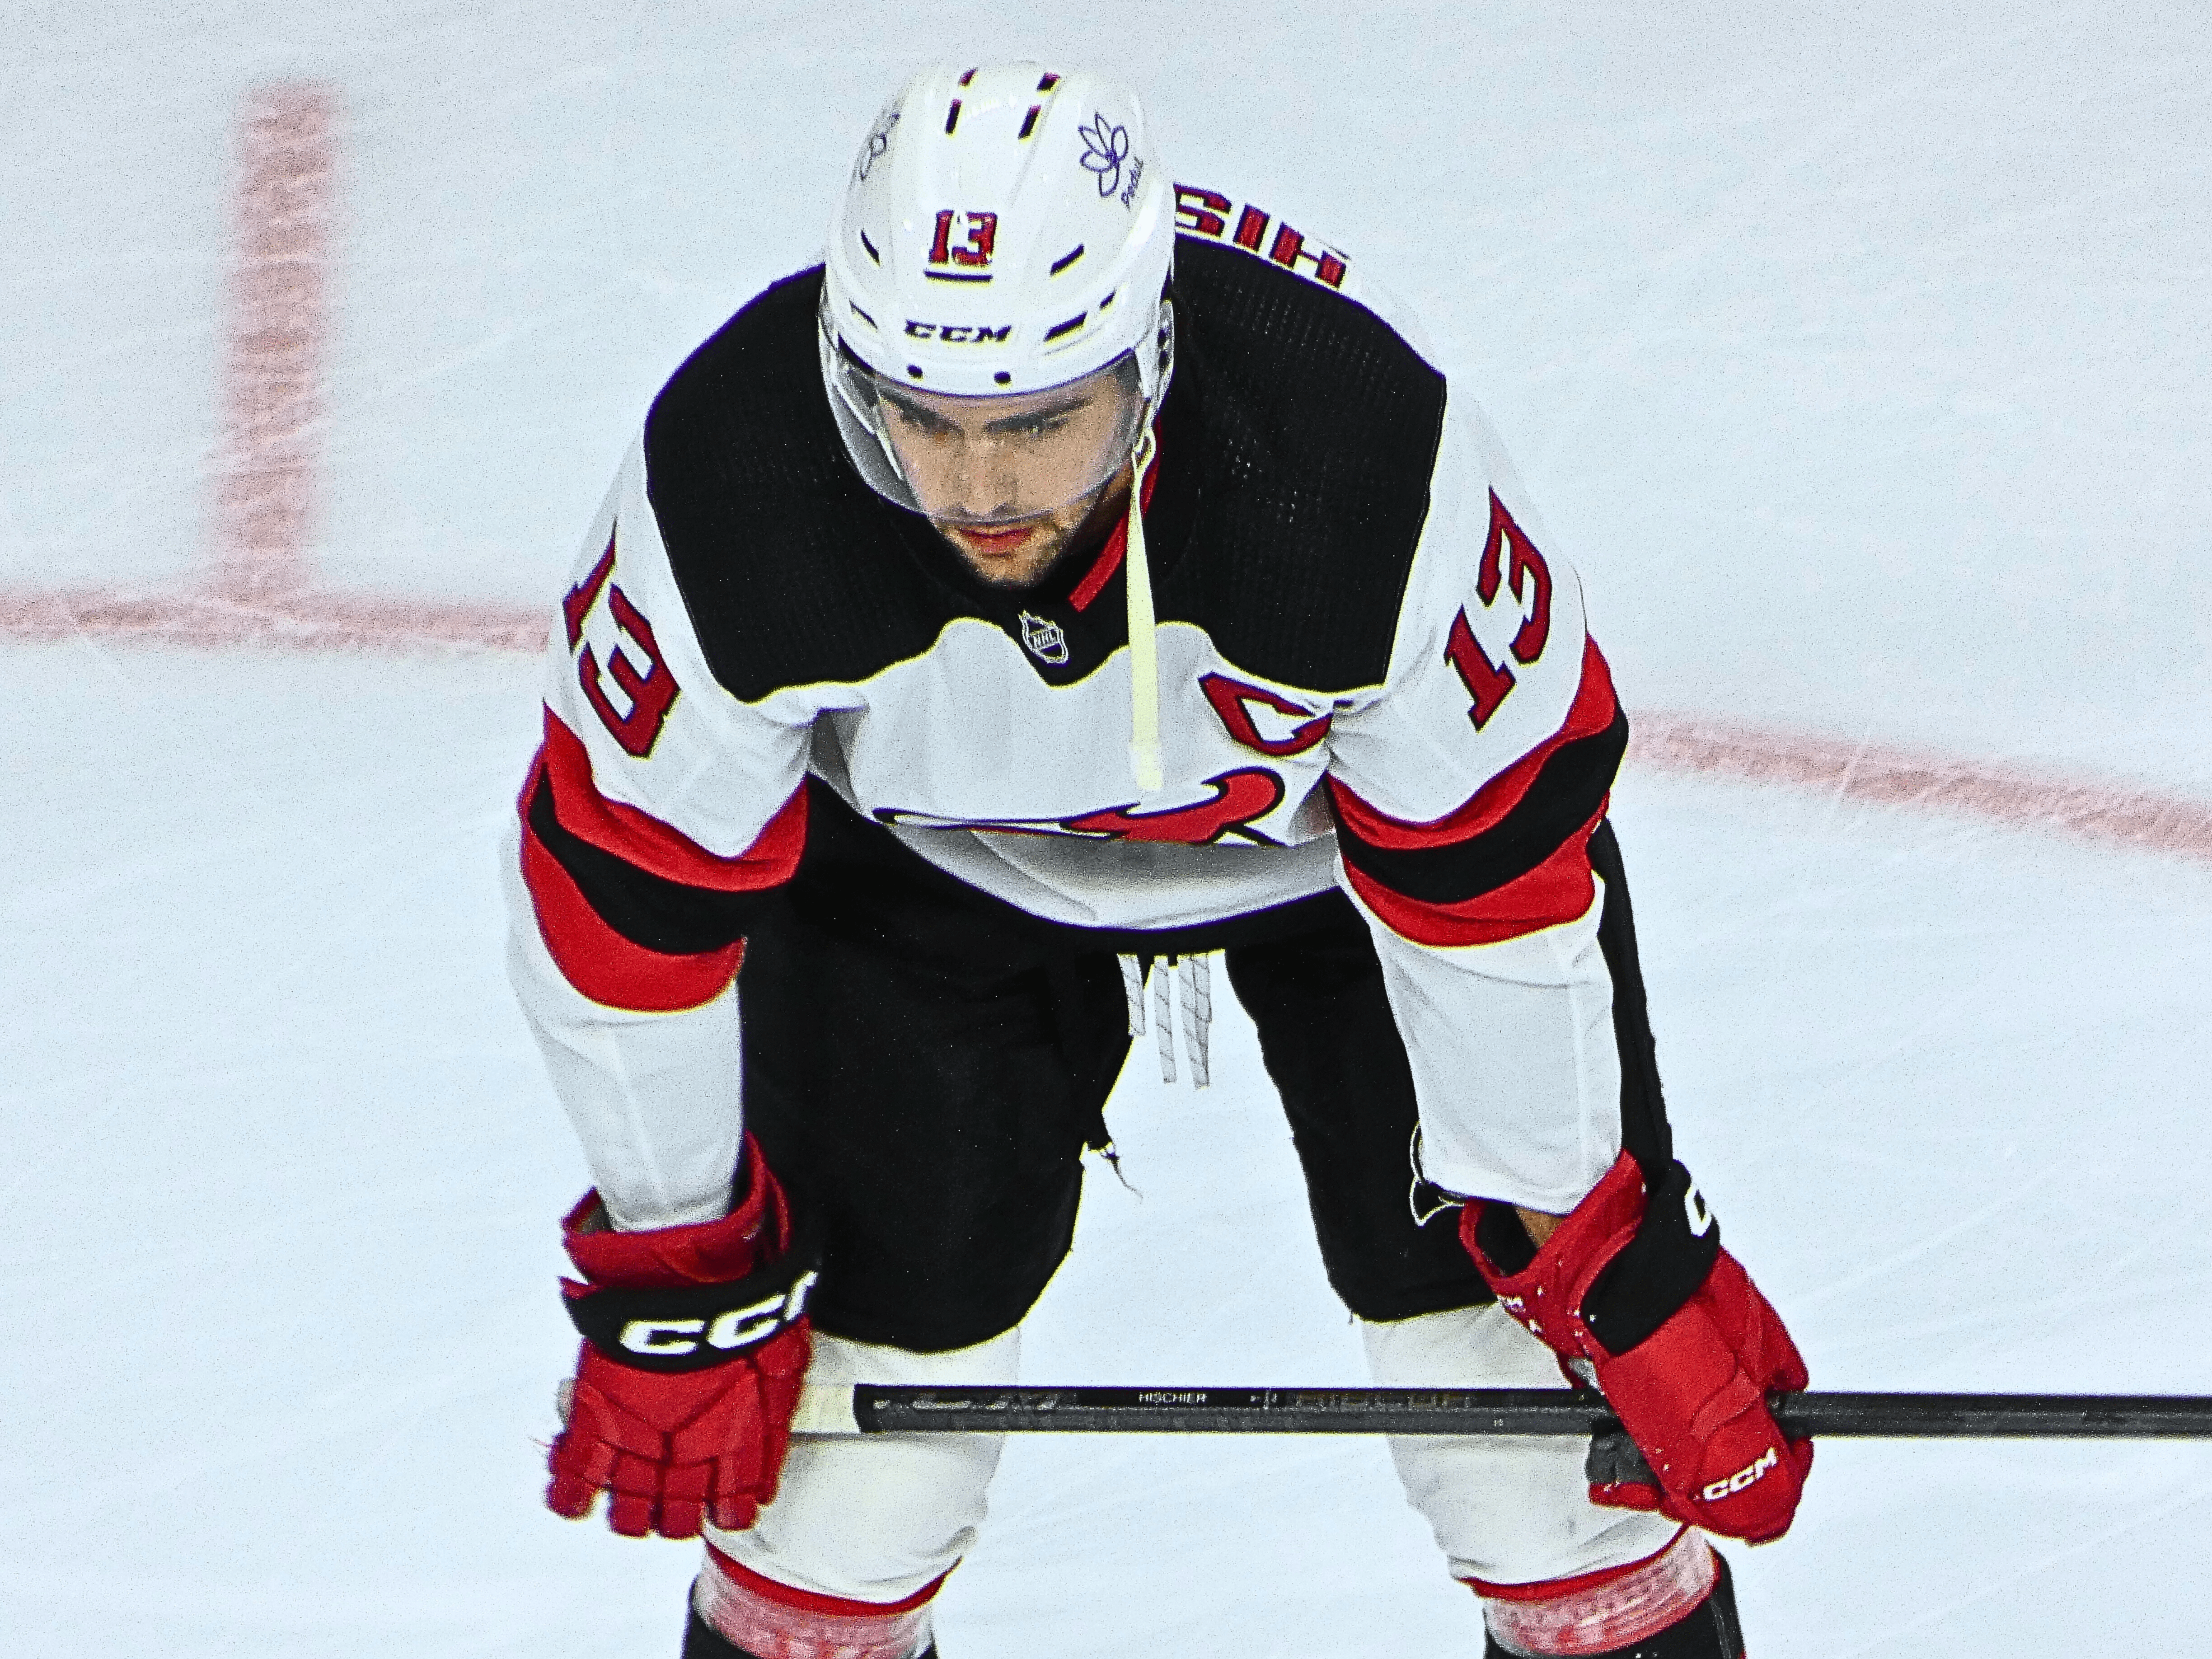 Devils' Erik Haula, Tomas Nosek likely to miss game vs. Islanders